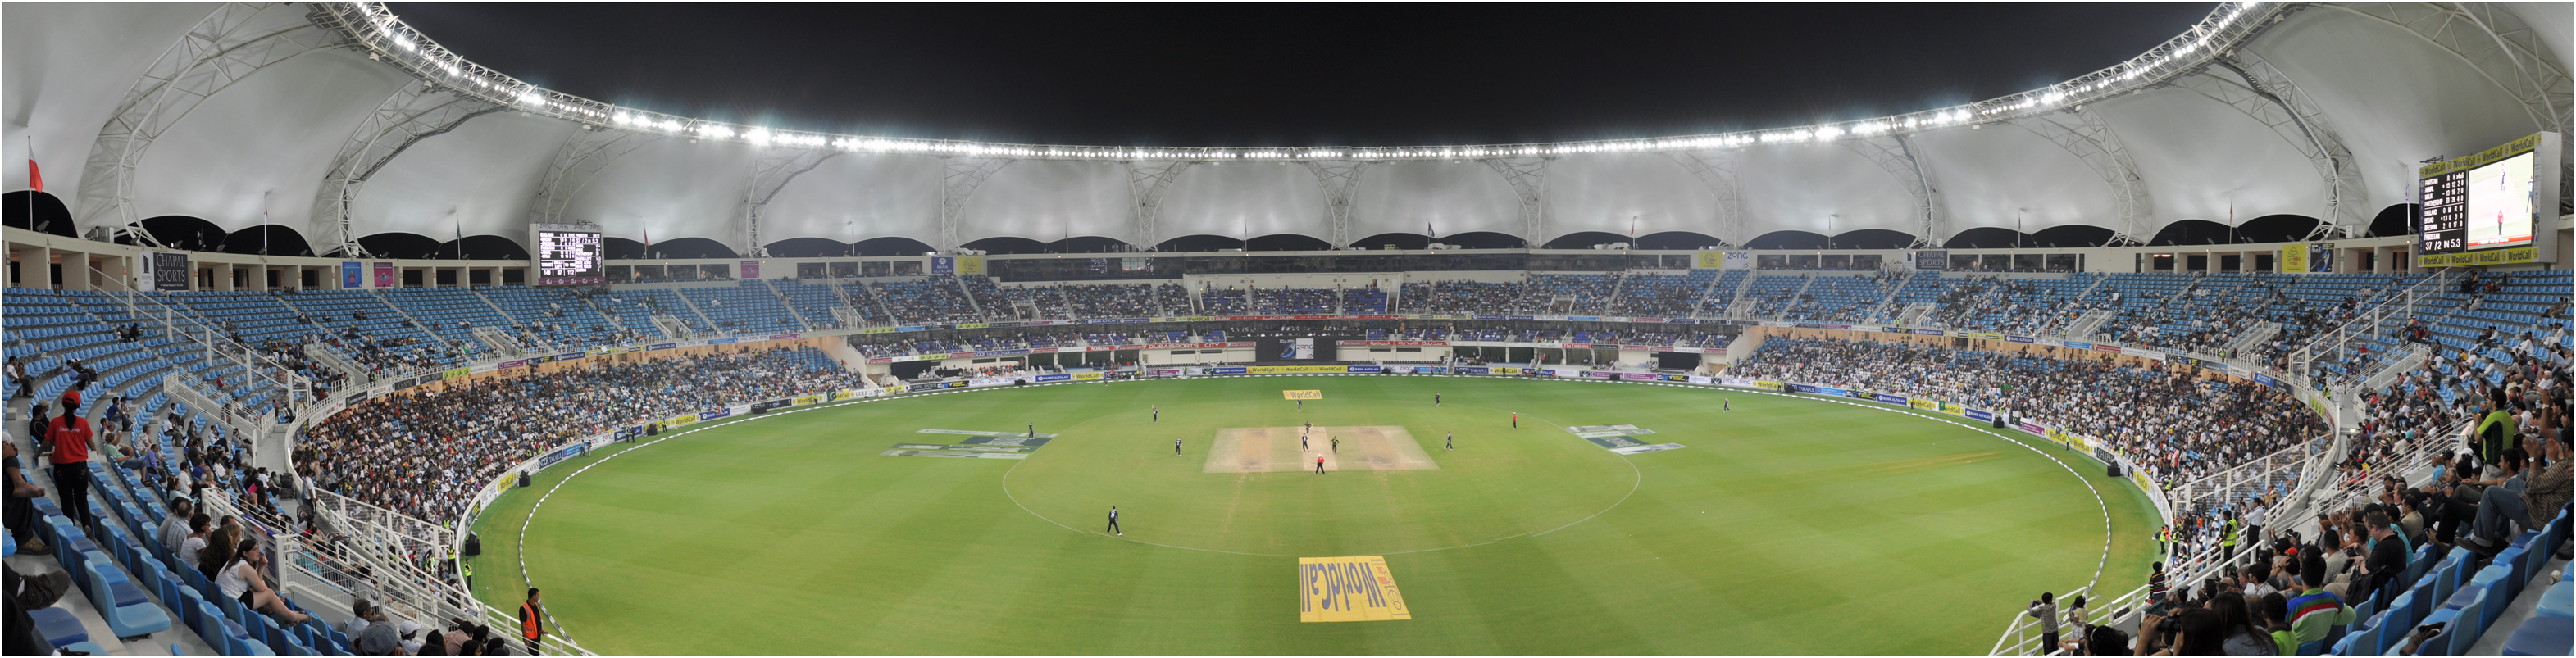 Dubai_Cricket_Stadium_Panorama_by_kazimkirmani.jpg